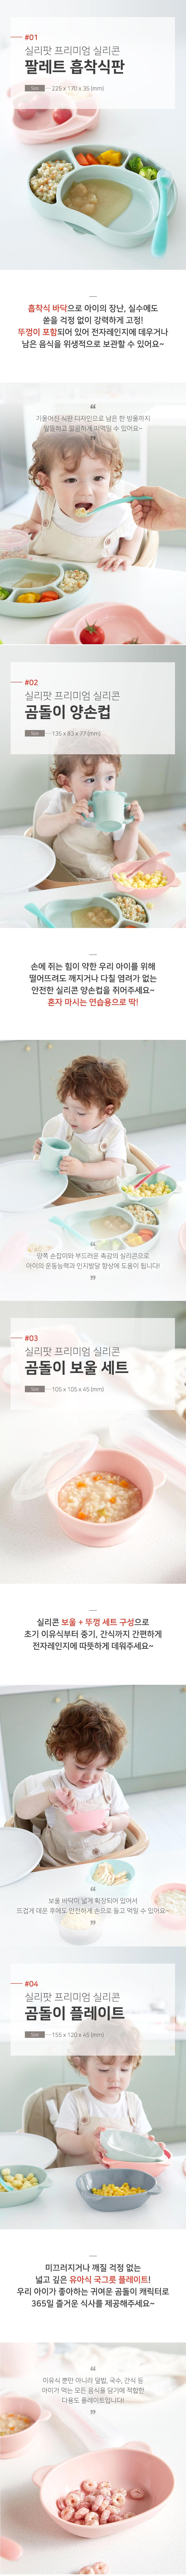 안심하고 육아 [실리팟]한국산 실리콘 이유식 식기 세트 Silipot Bebe